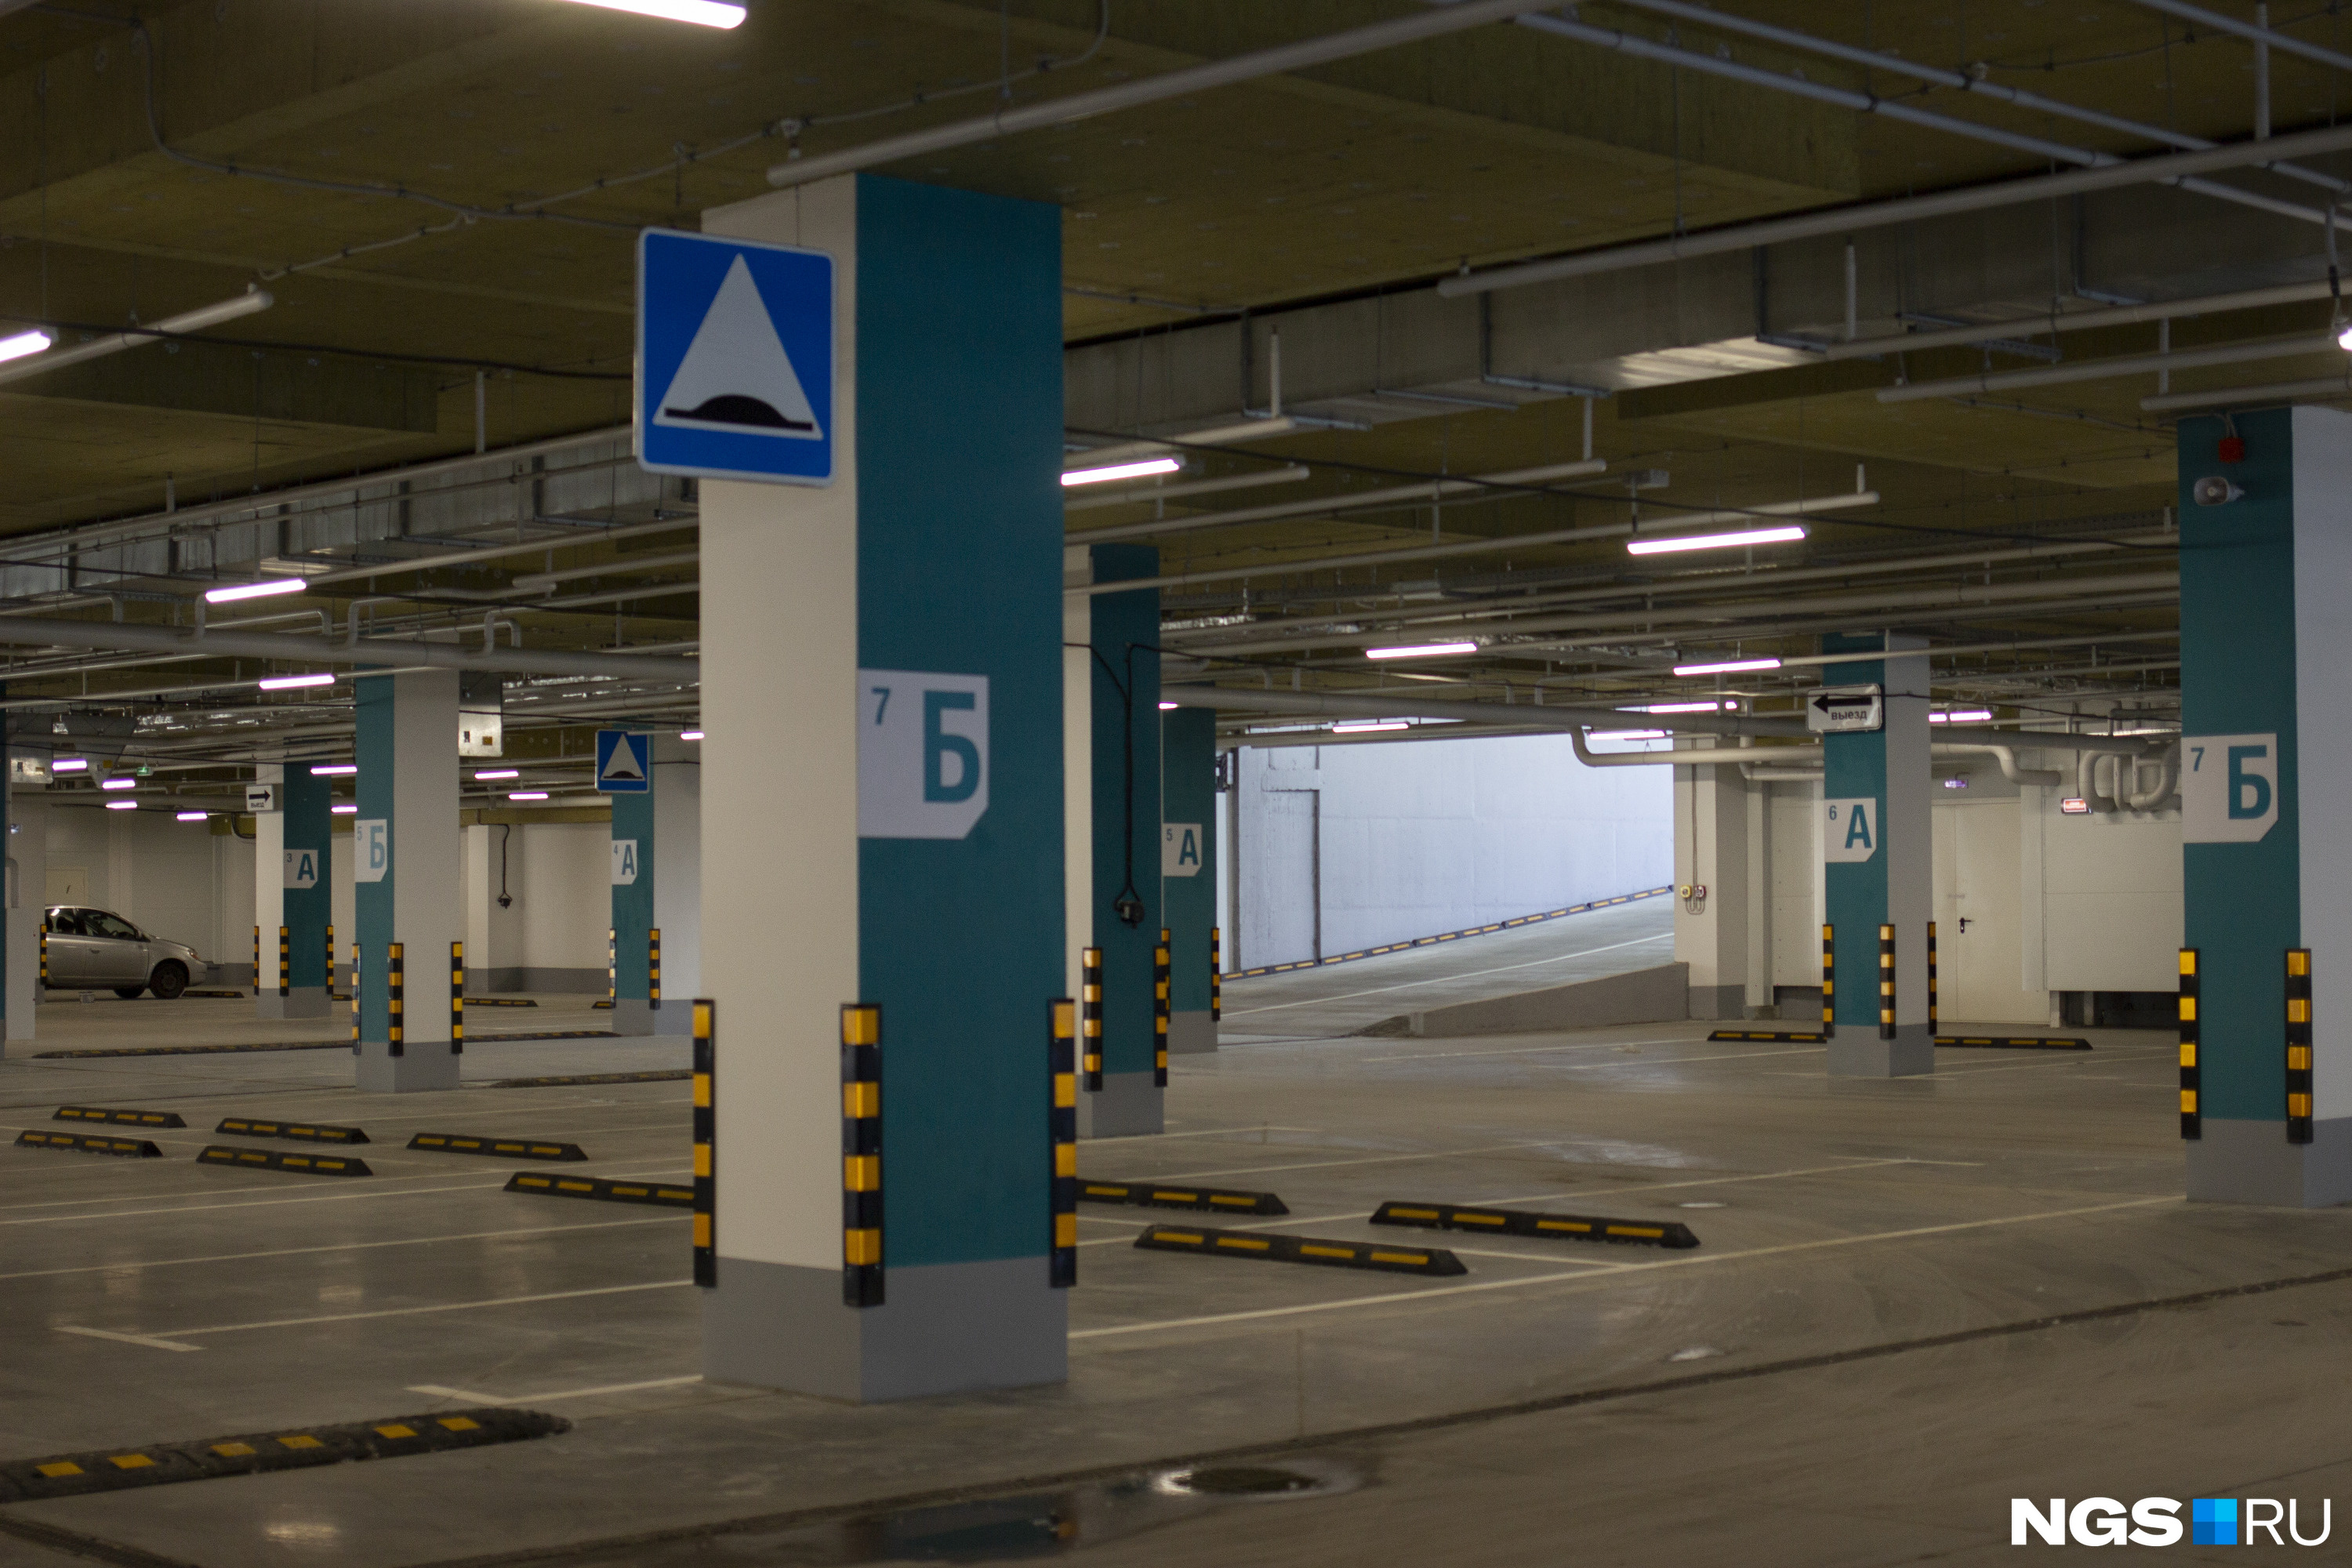 Путь клиента начинается с парковки — здесь она располагается на <nobr class="_">1-м</nobr> этаже. Парковка рассчитана почти на 400 автомобилей